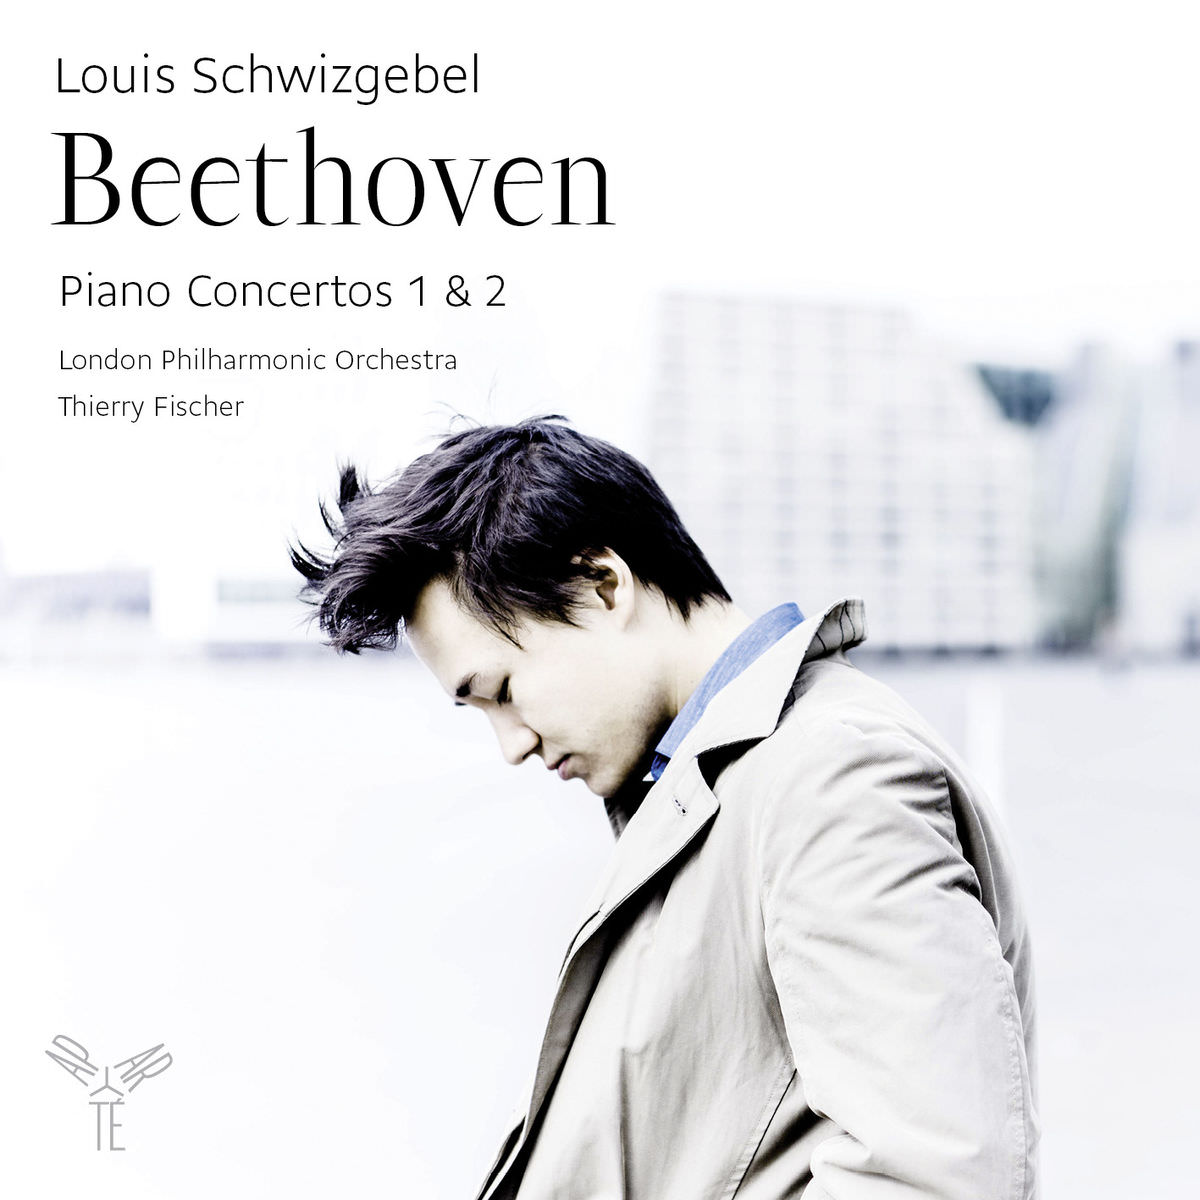 Louis Schwizgebel - Beethoveen: Piano Concertos 1 & 2 (2014) [FLAC 24bit/96kHz]